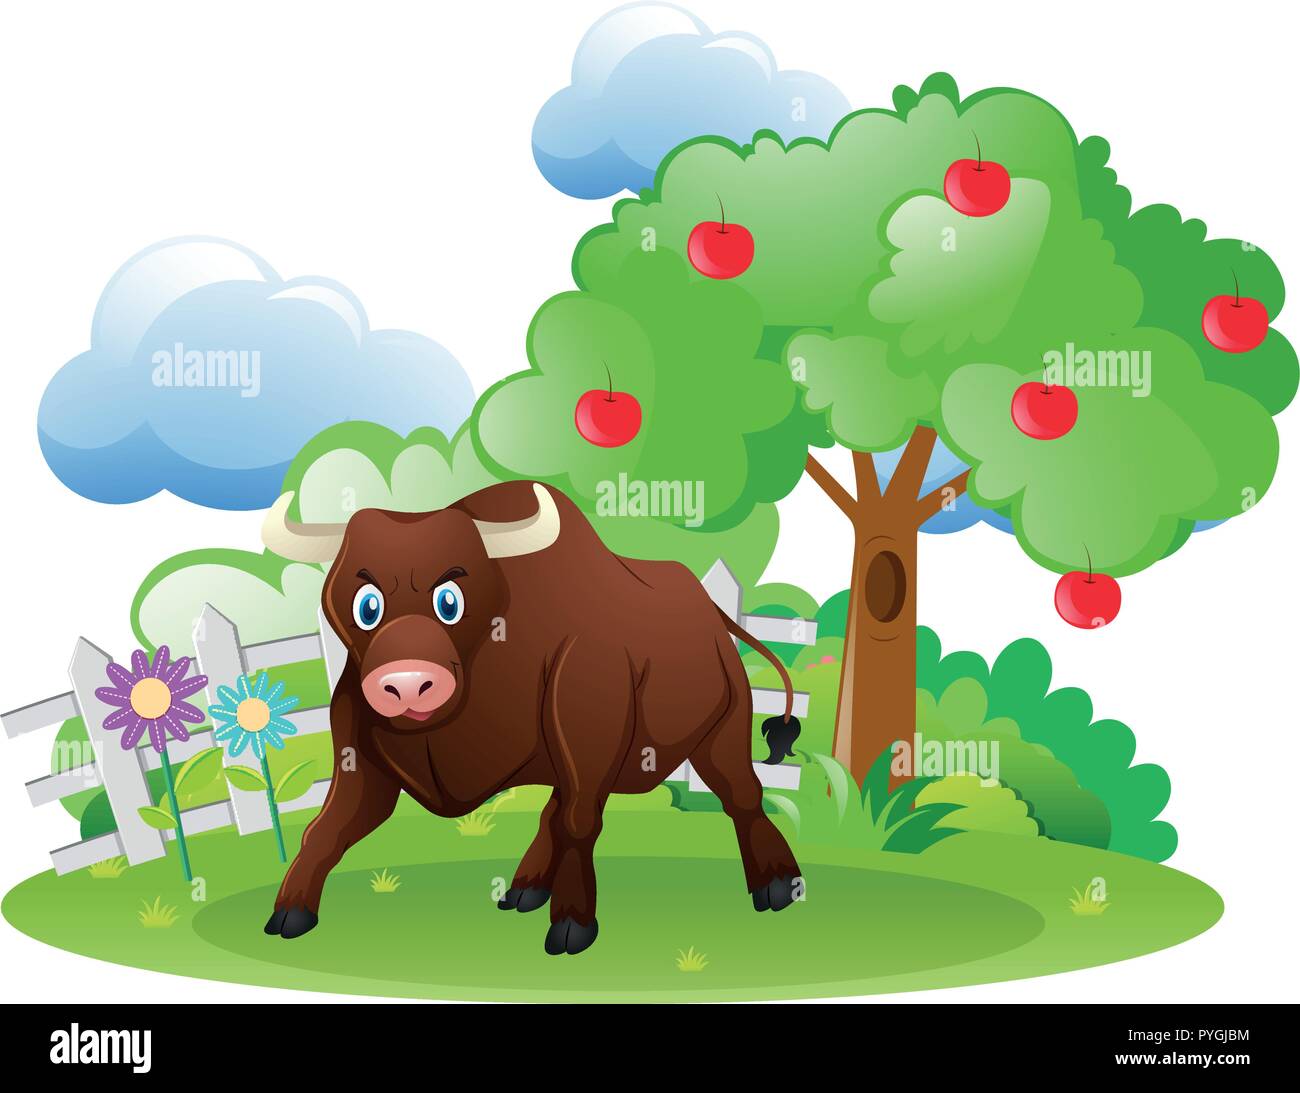 Bull standing in garden illustration Stock Vector